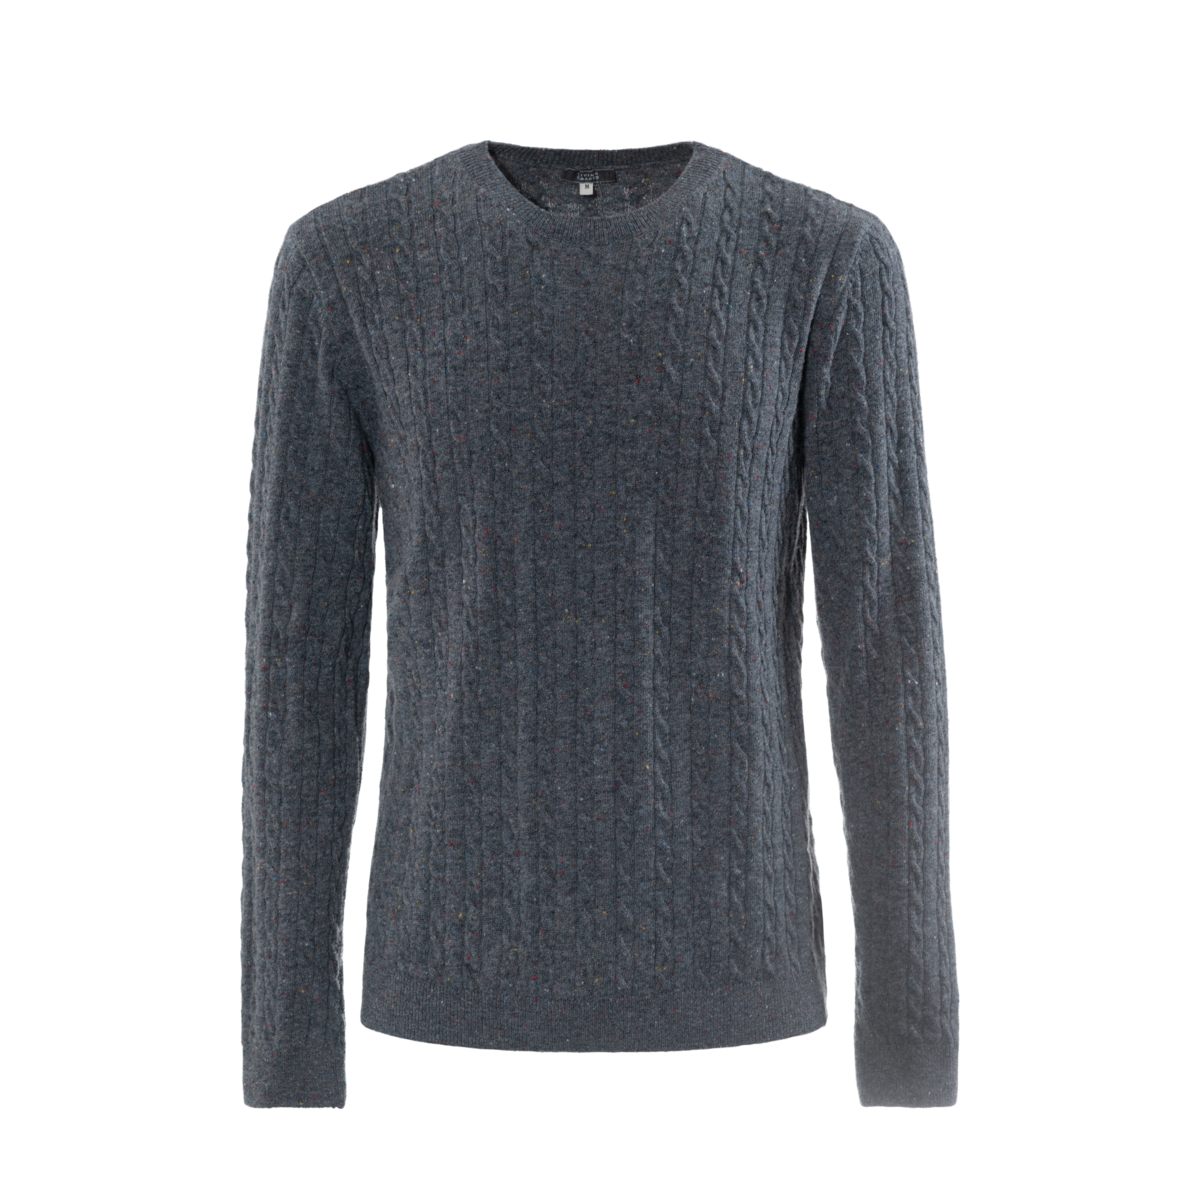 Grey Sweater, NICOLAS